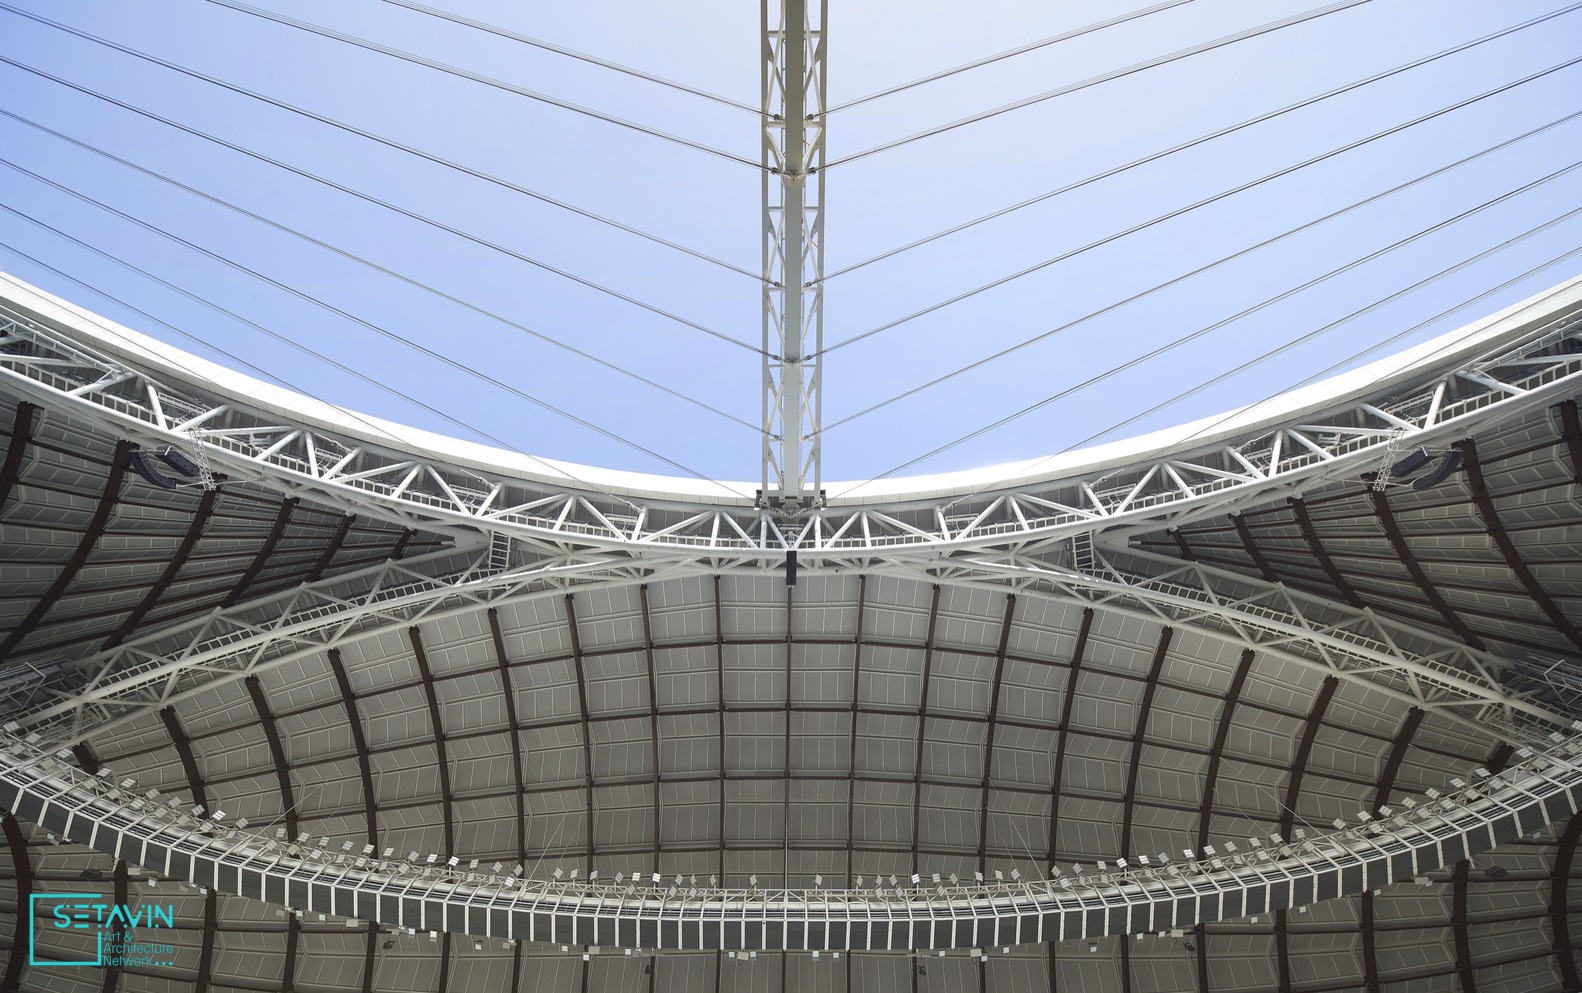 افتتاح اولین استادیوم جام جهانی 2022 قطر